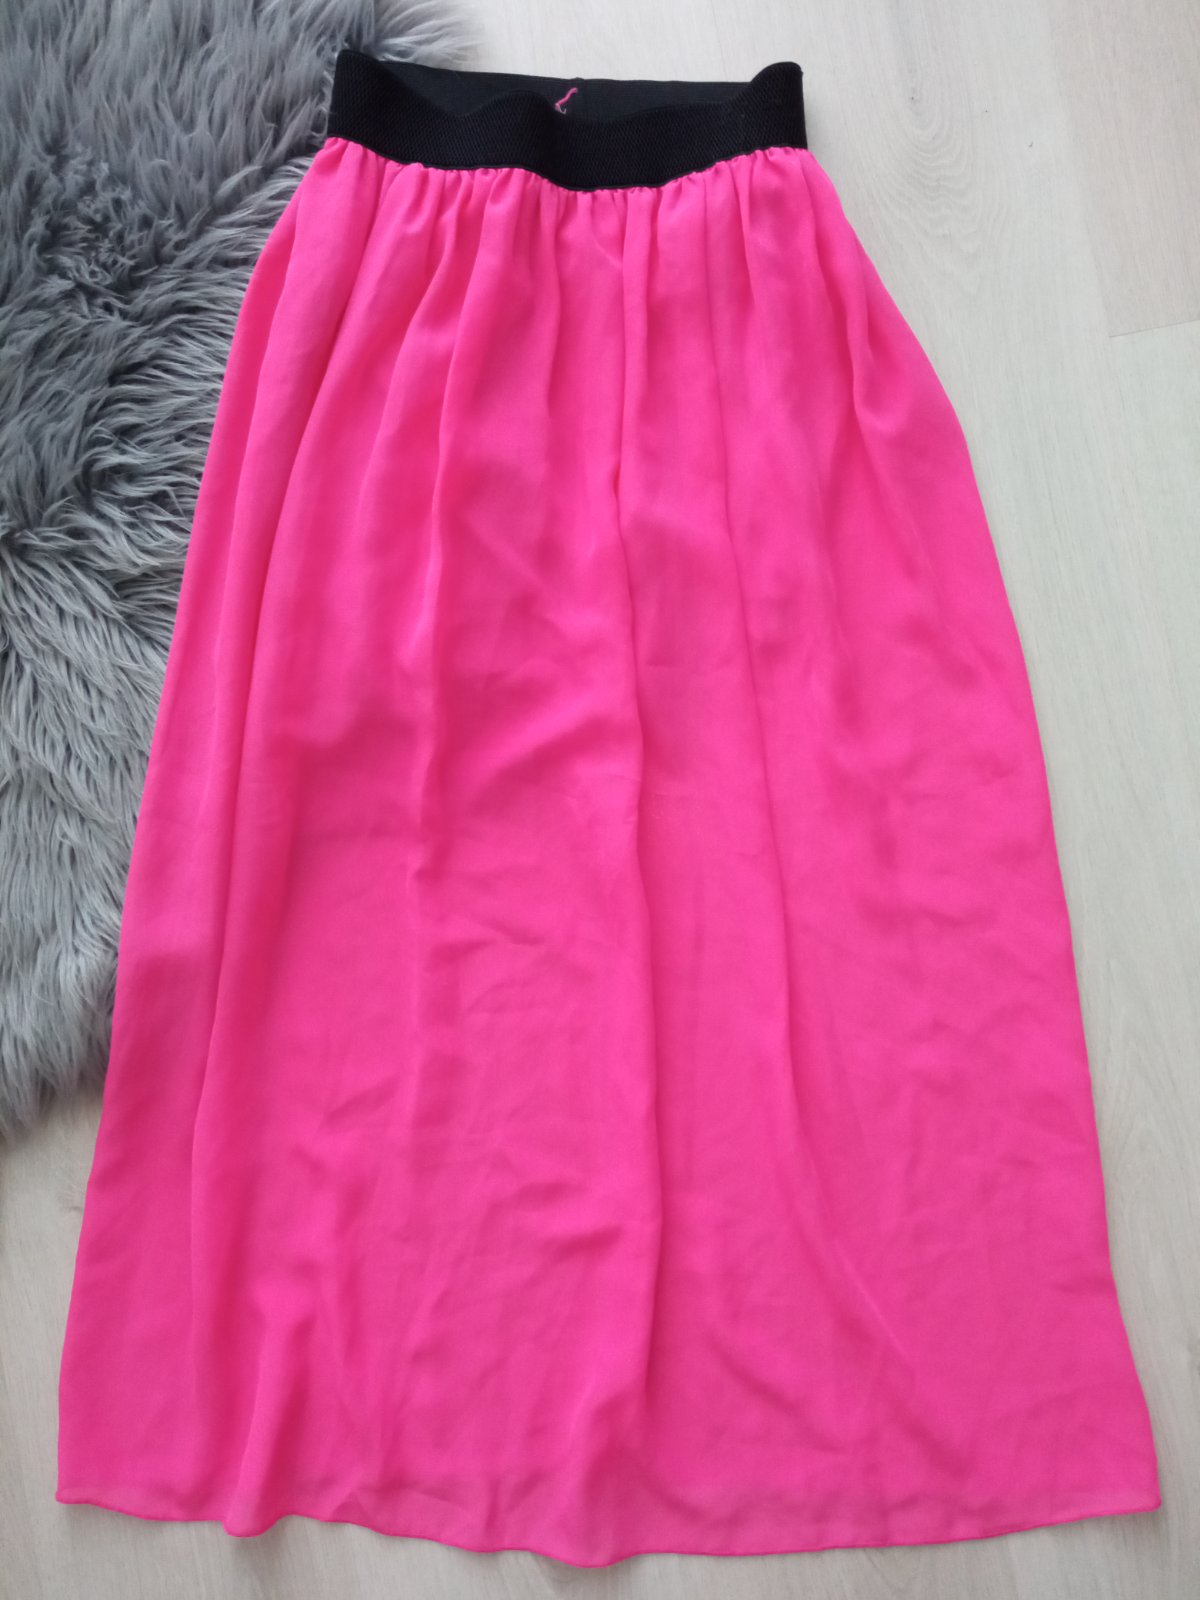 Neonovo-ružová sukňa